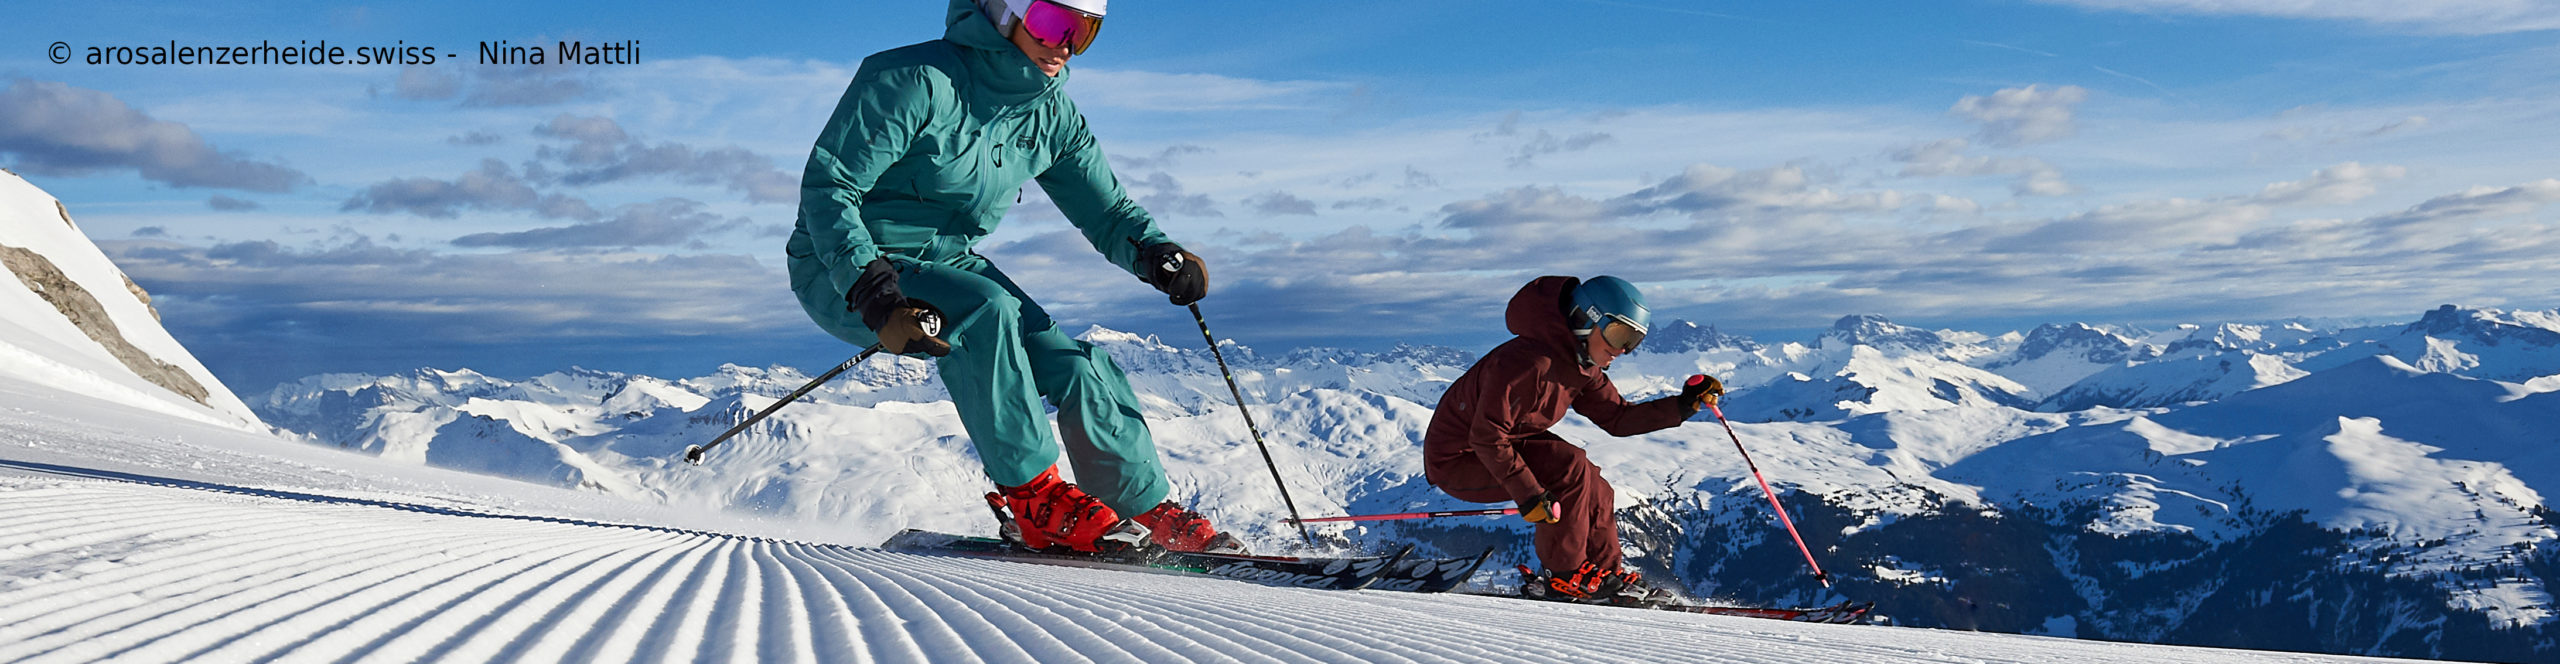 AROSA – LENZERHEIDE – SCHWEIZ – SchneeSparTag – TagesSkireise zum Sparpreis inkl. Skipass ab 89€ 